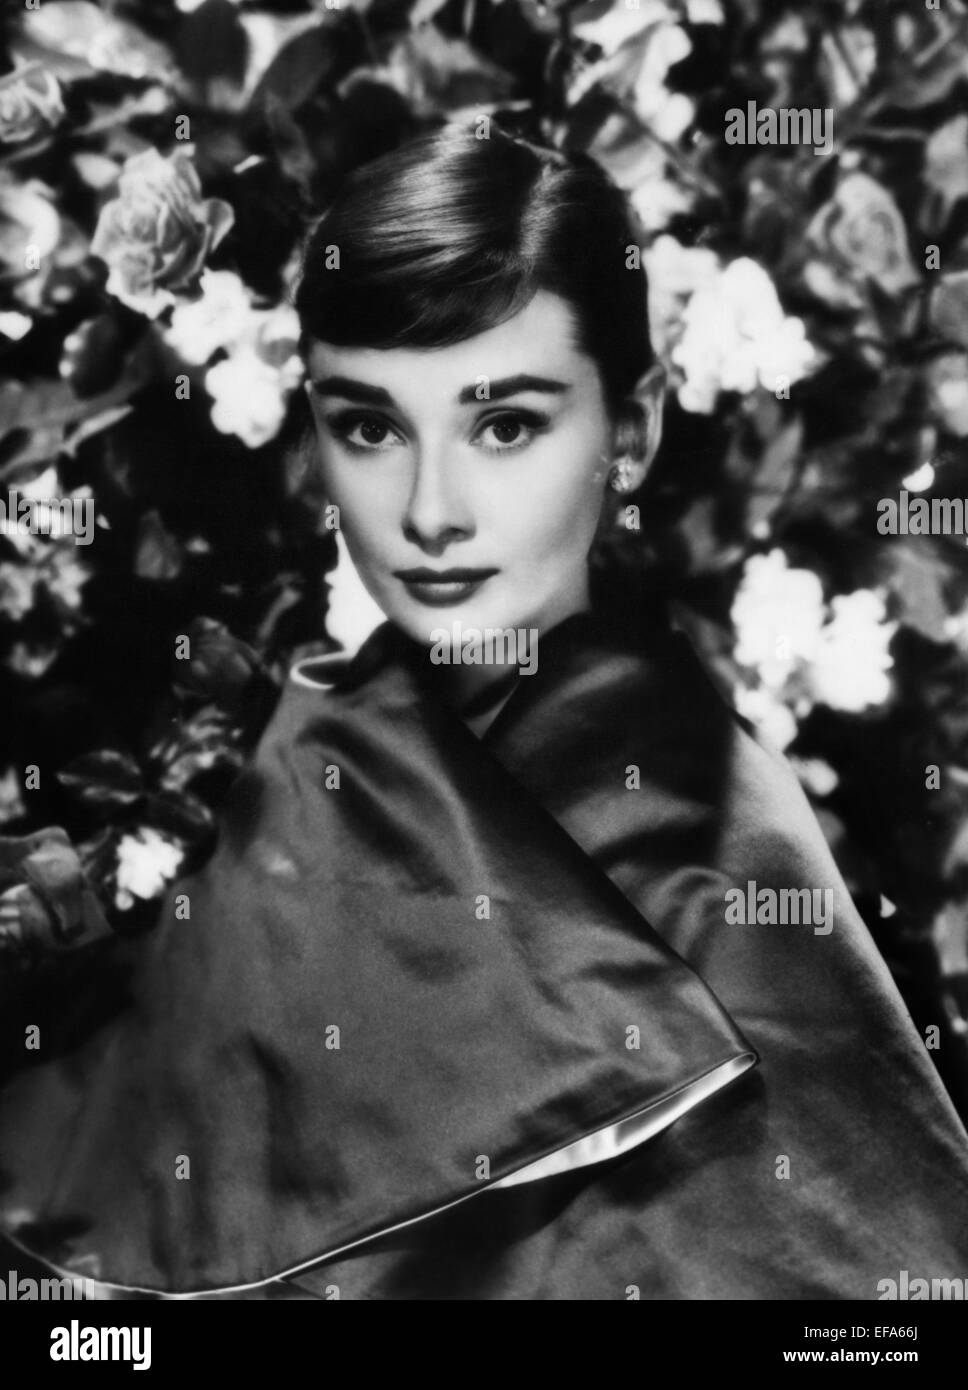 Audrey hepburn actress 1954 hi-res stock photography and images - Alamy